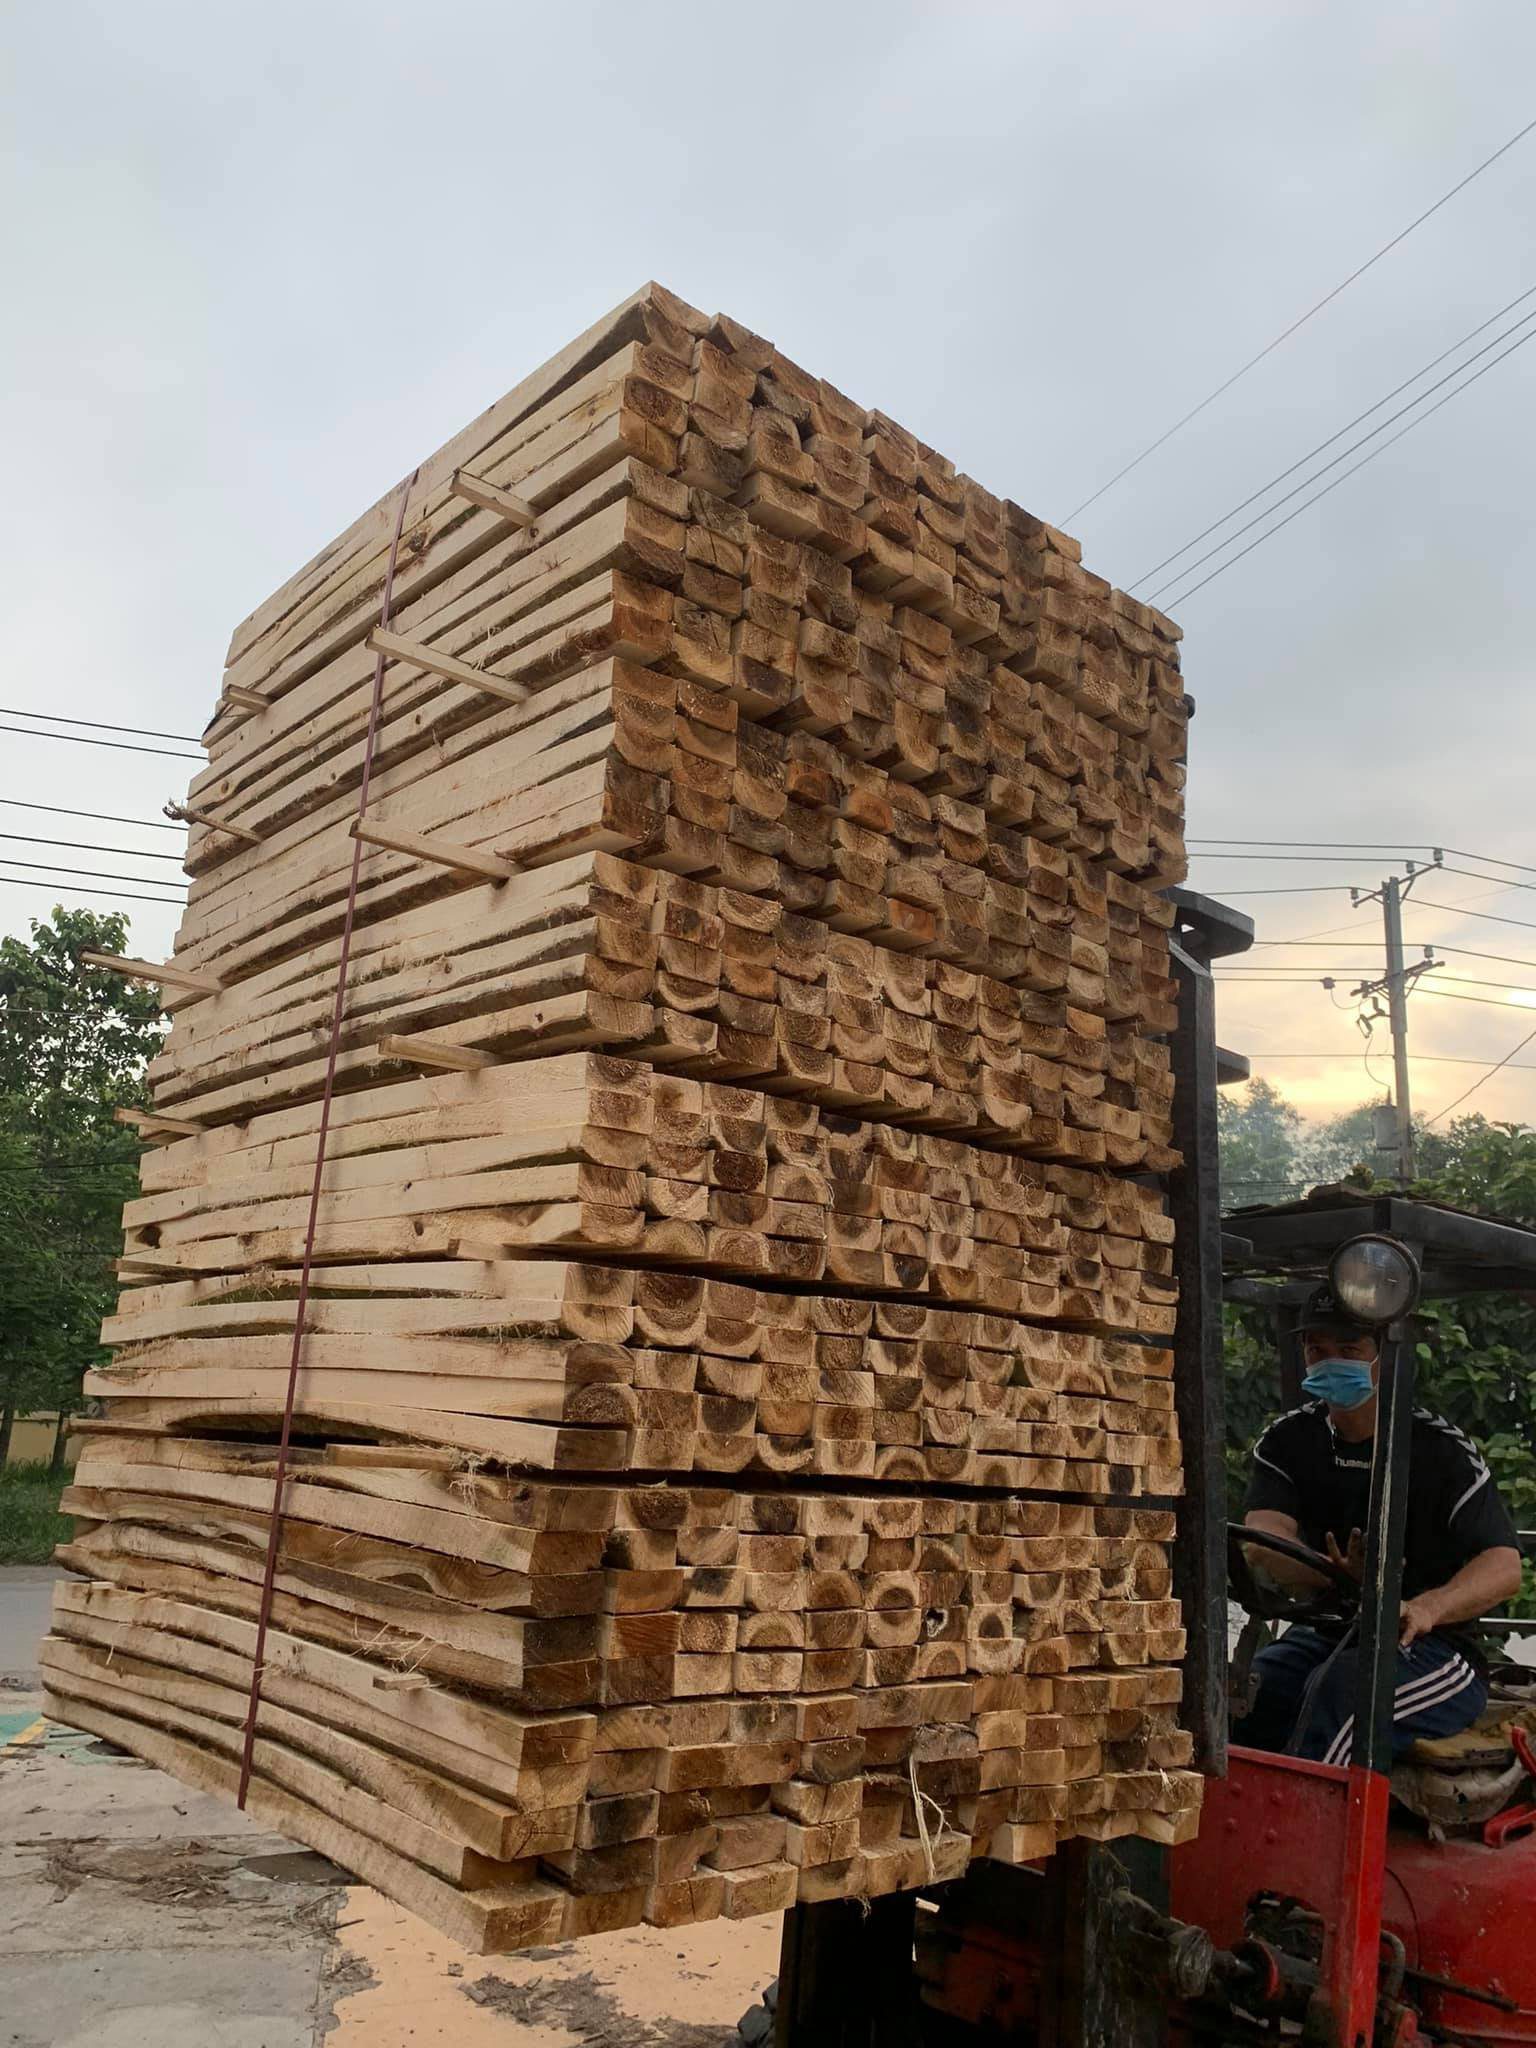 Đơn hàng xuất khẩu gỗ keo xẻ sang thị trường Đài Loan GK01-301021